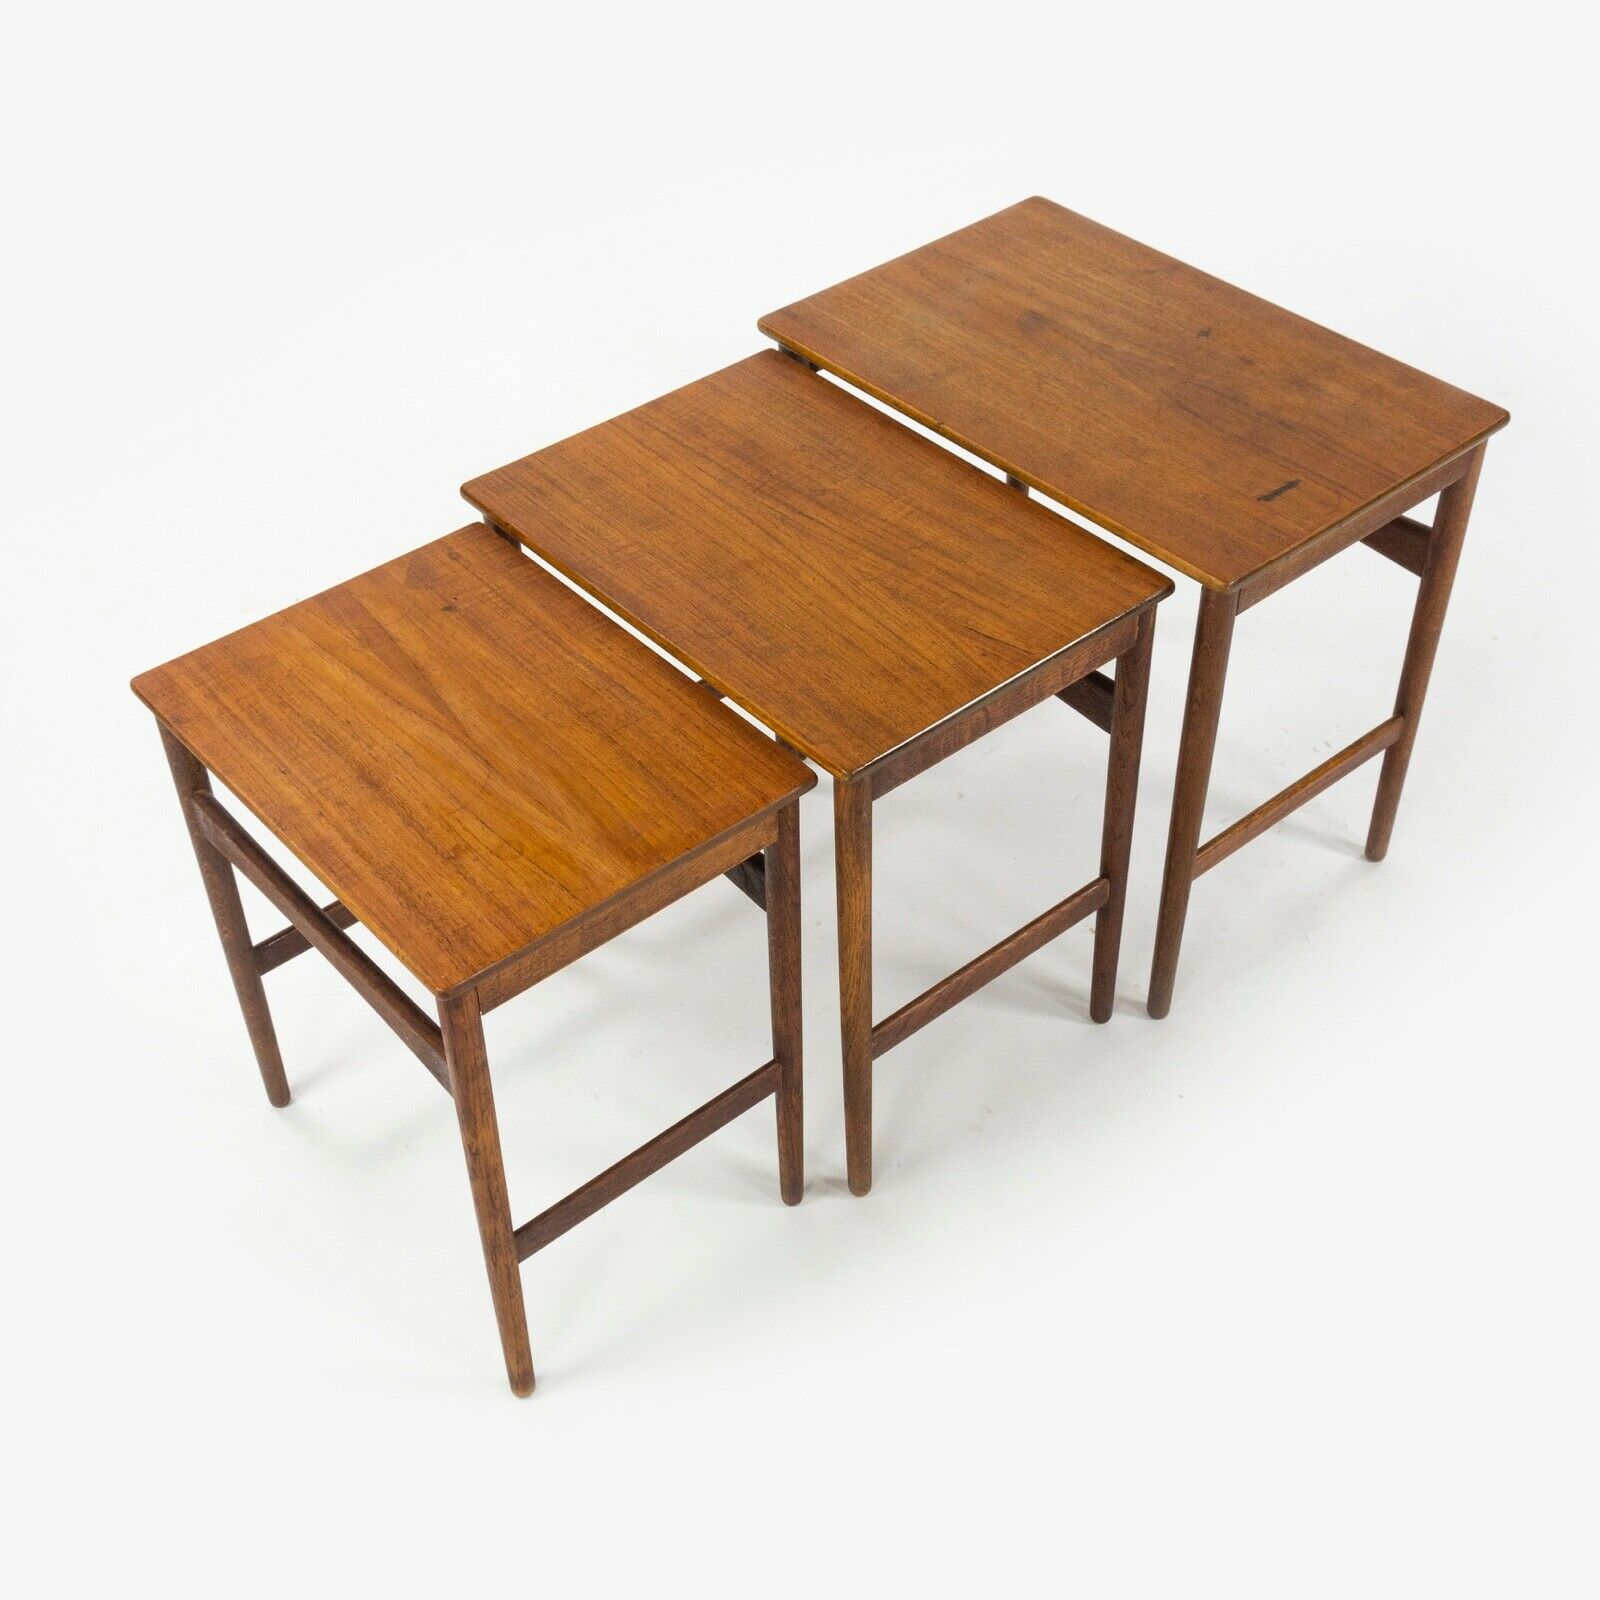 SOLD 1950s Vintage Hans J. Wegner Andreas Tuck Teak Nesting Tables Set of 3 Made in Denmark